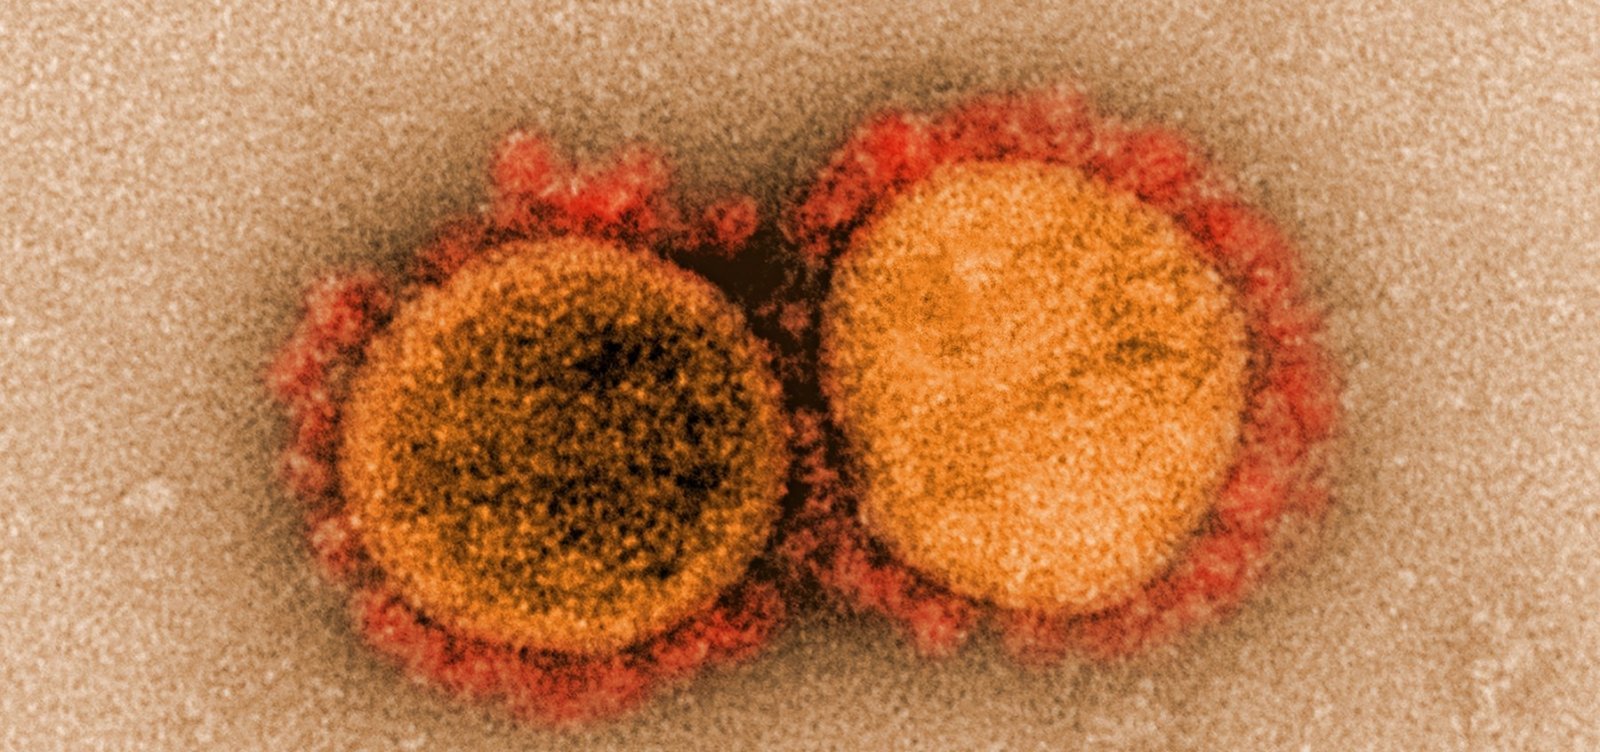 Bairros Caixa D’agua e Cardeal registram primeiros casos de coronavírus